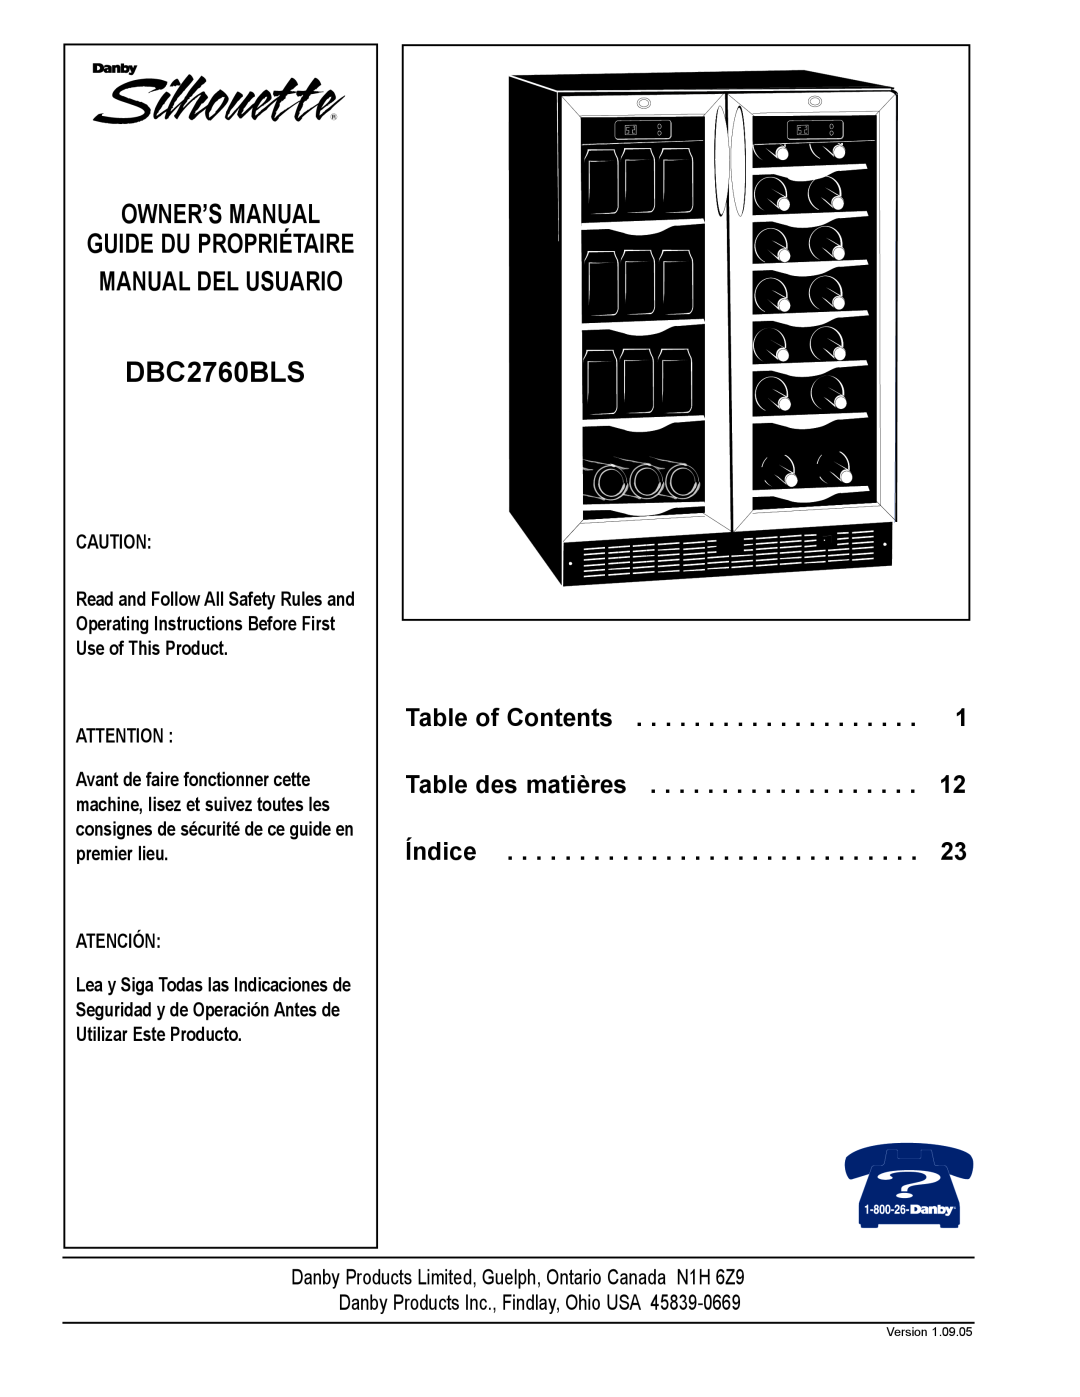 Danby DBC2760BLS manual Table of Contents, Table des matières, Índice, Guide Du Propriétaire Manual Del Usuario, Atención 